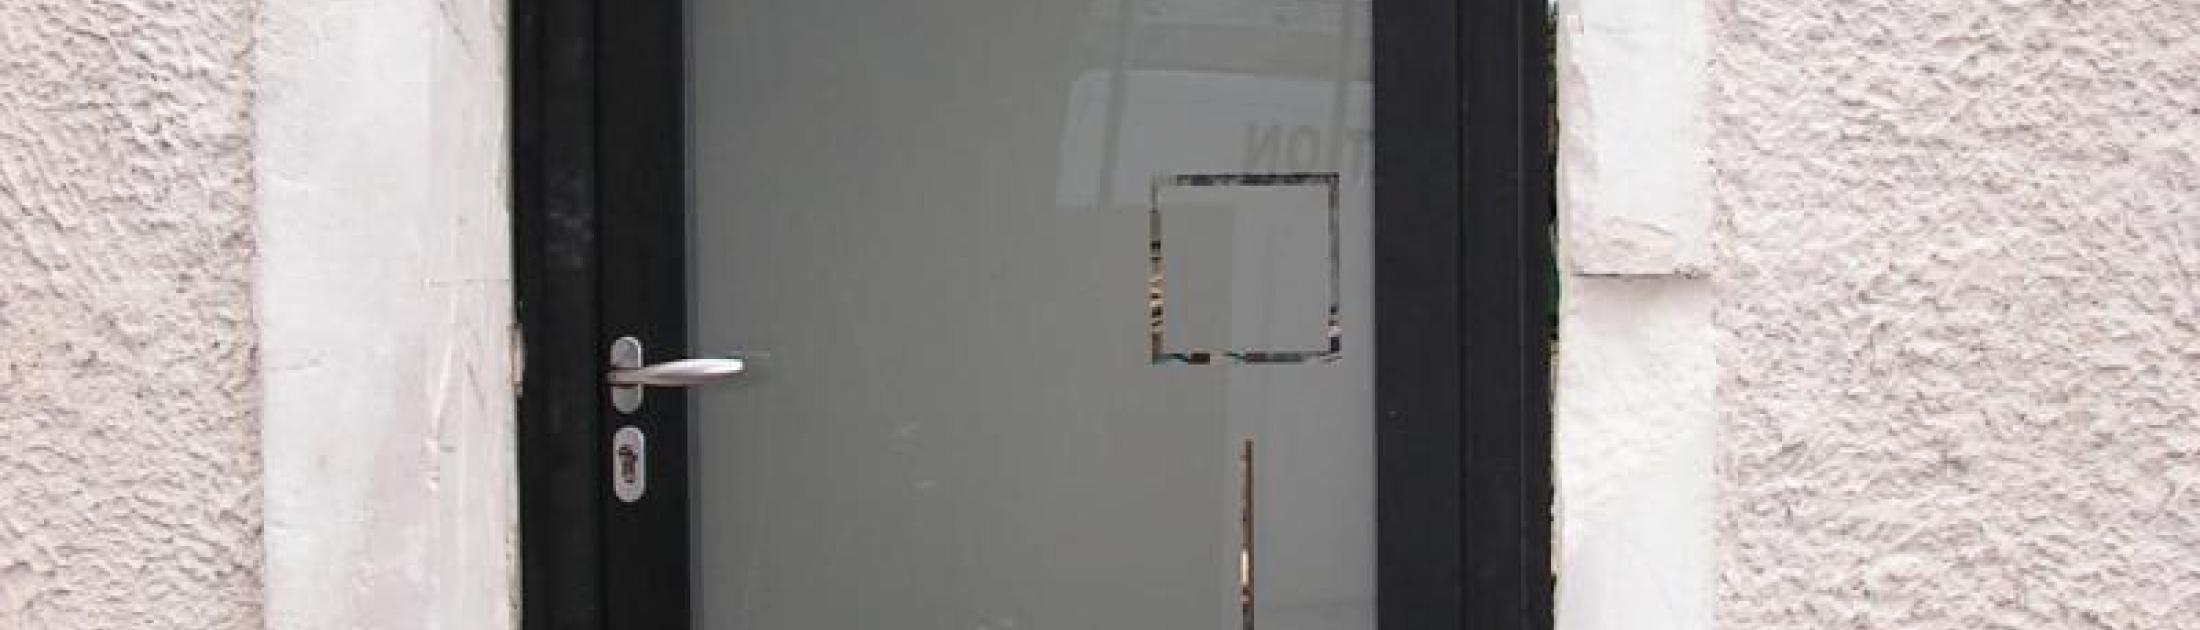 MOUSSAC - 30190 - Pose de portes d'entrée Aluminium sur mesure 